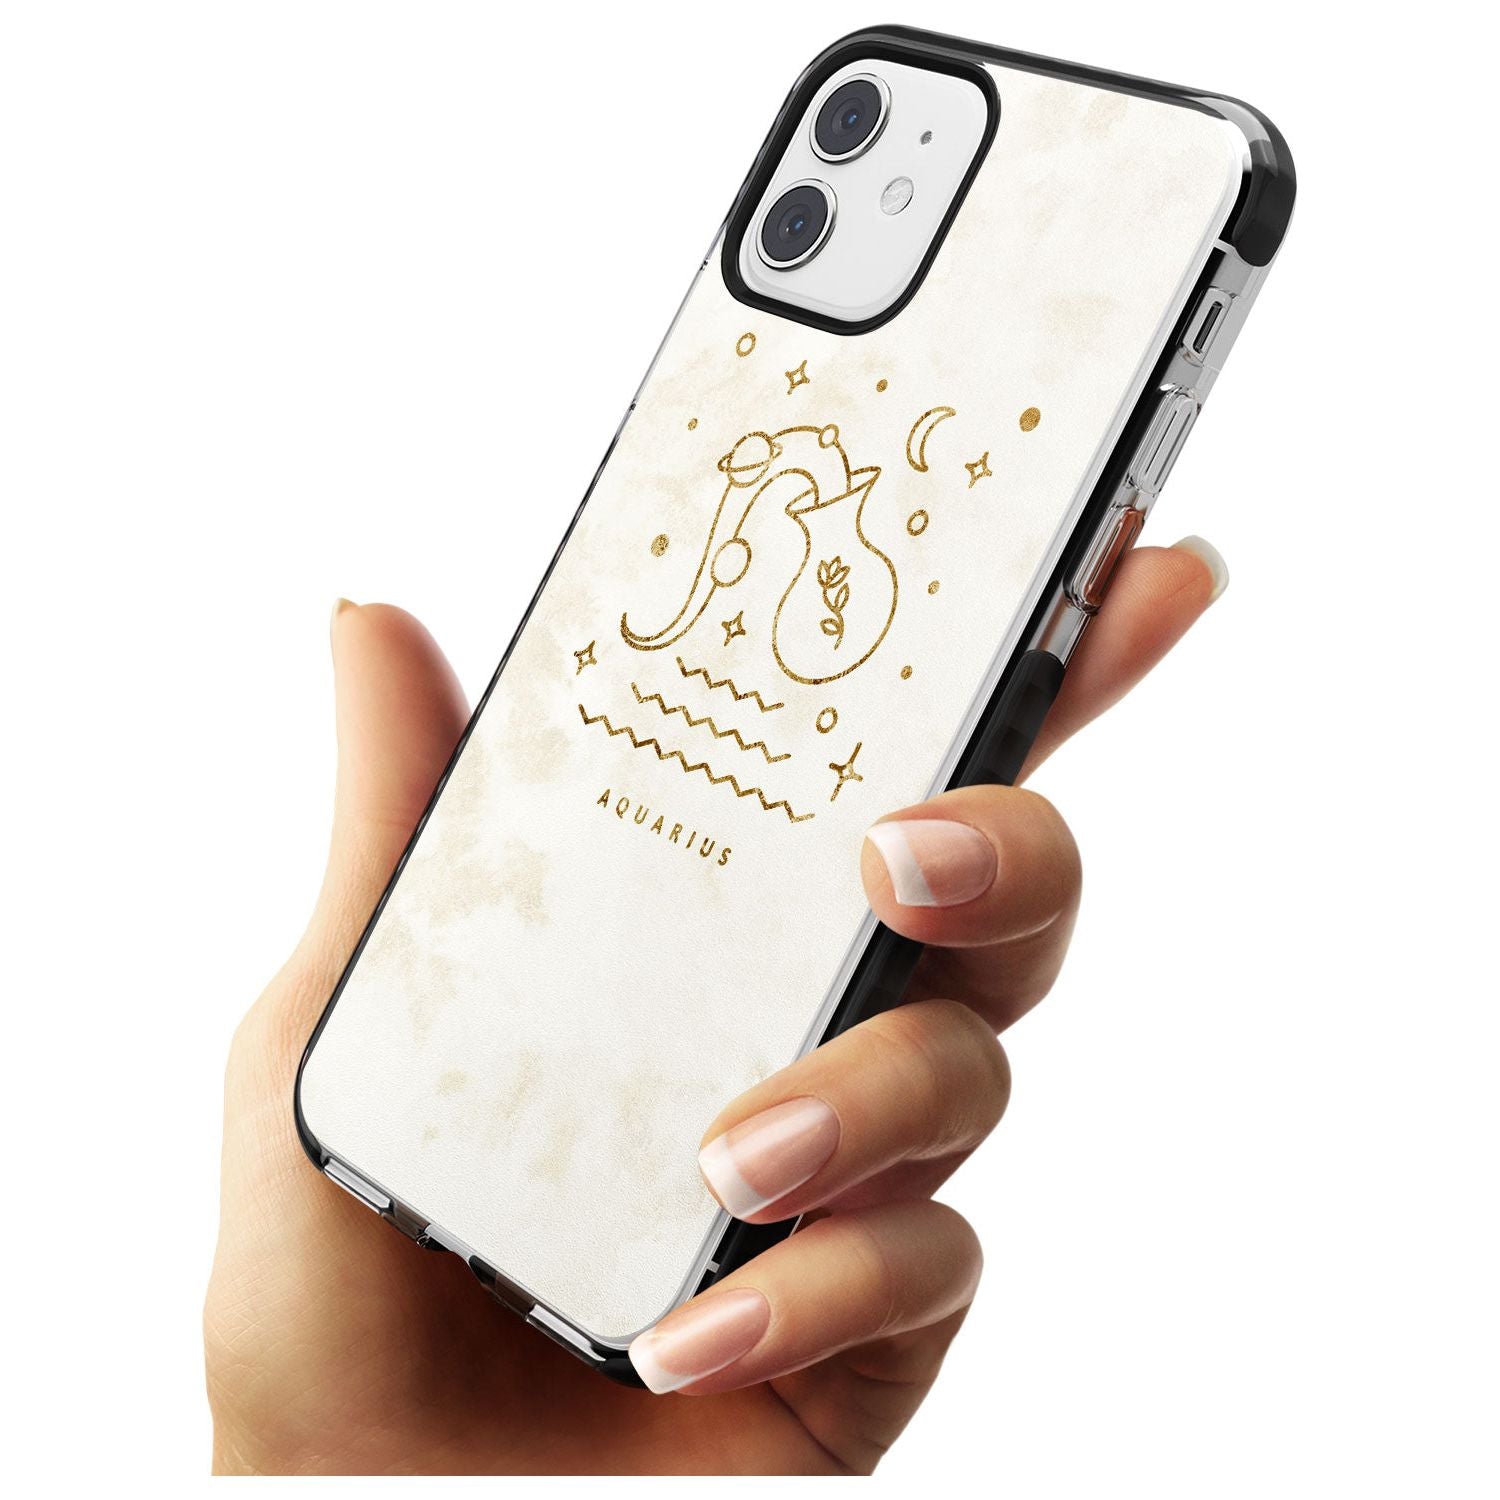 Aquarius Emblem - Solid Gold Marbled Design Black Impact Phone Case for iPhone 11